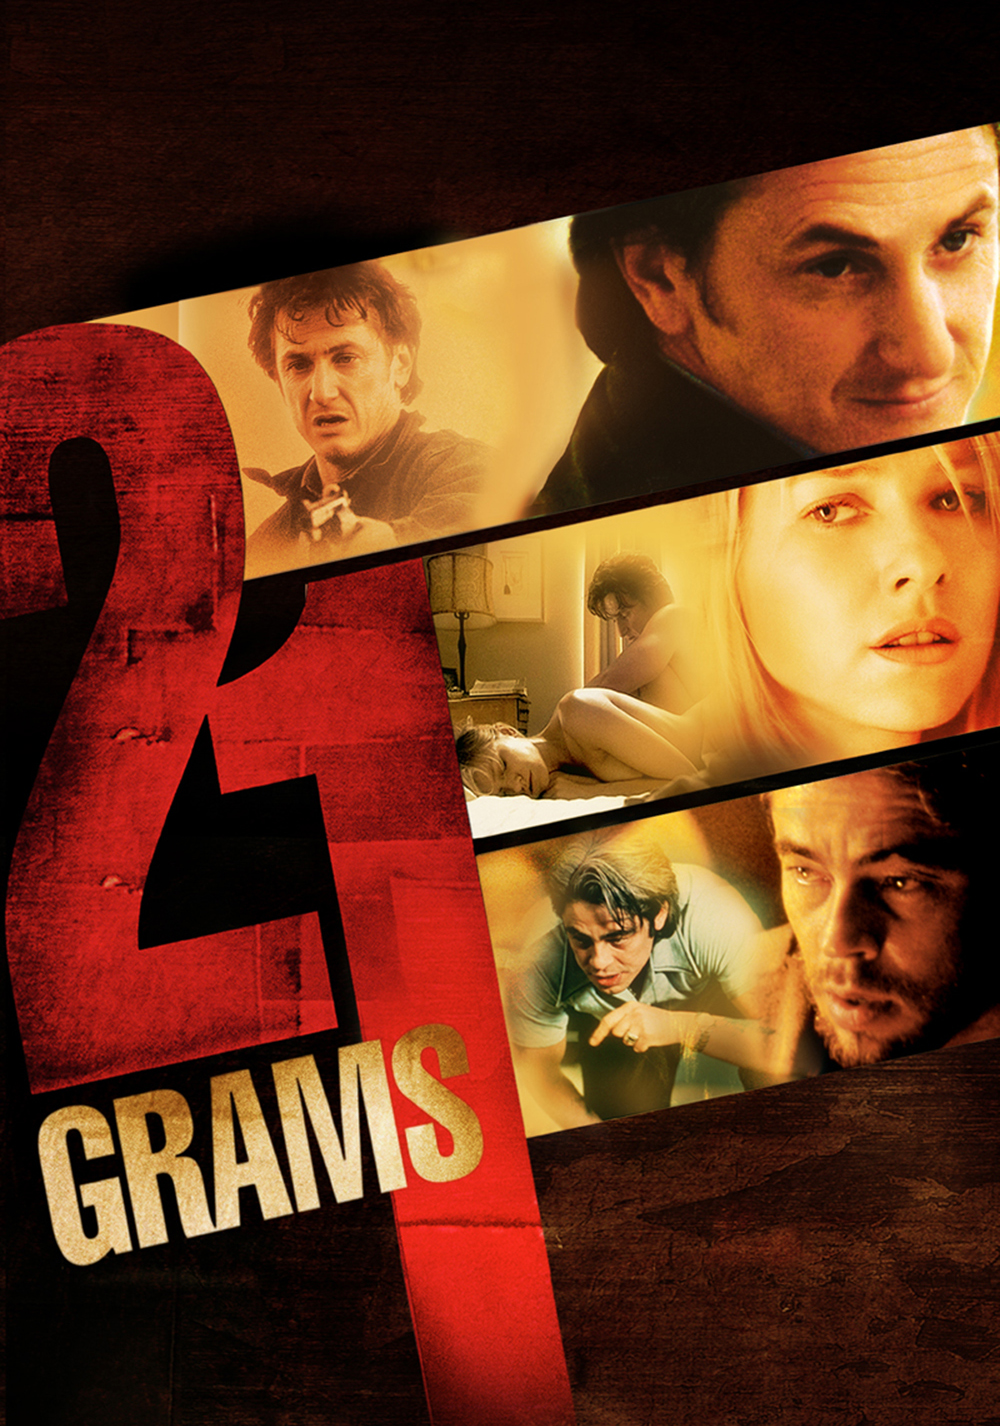 21 Grams (2003) ★★★★☆